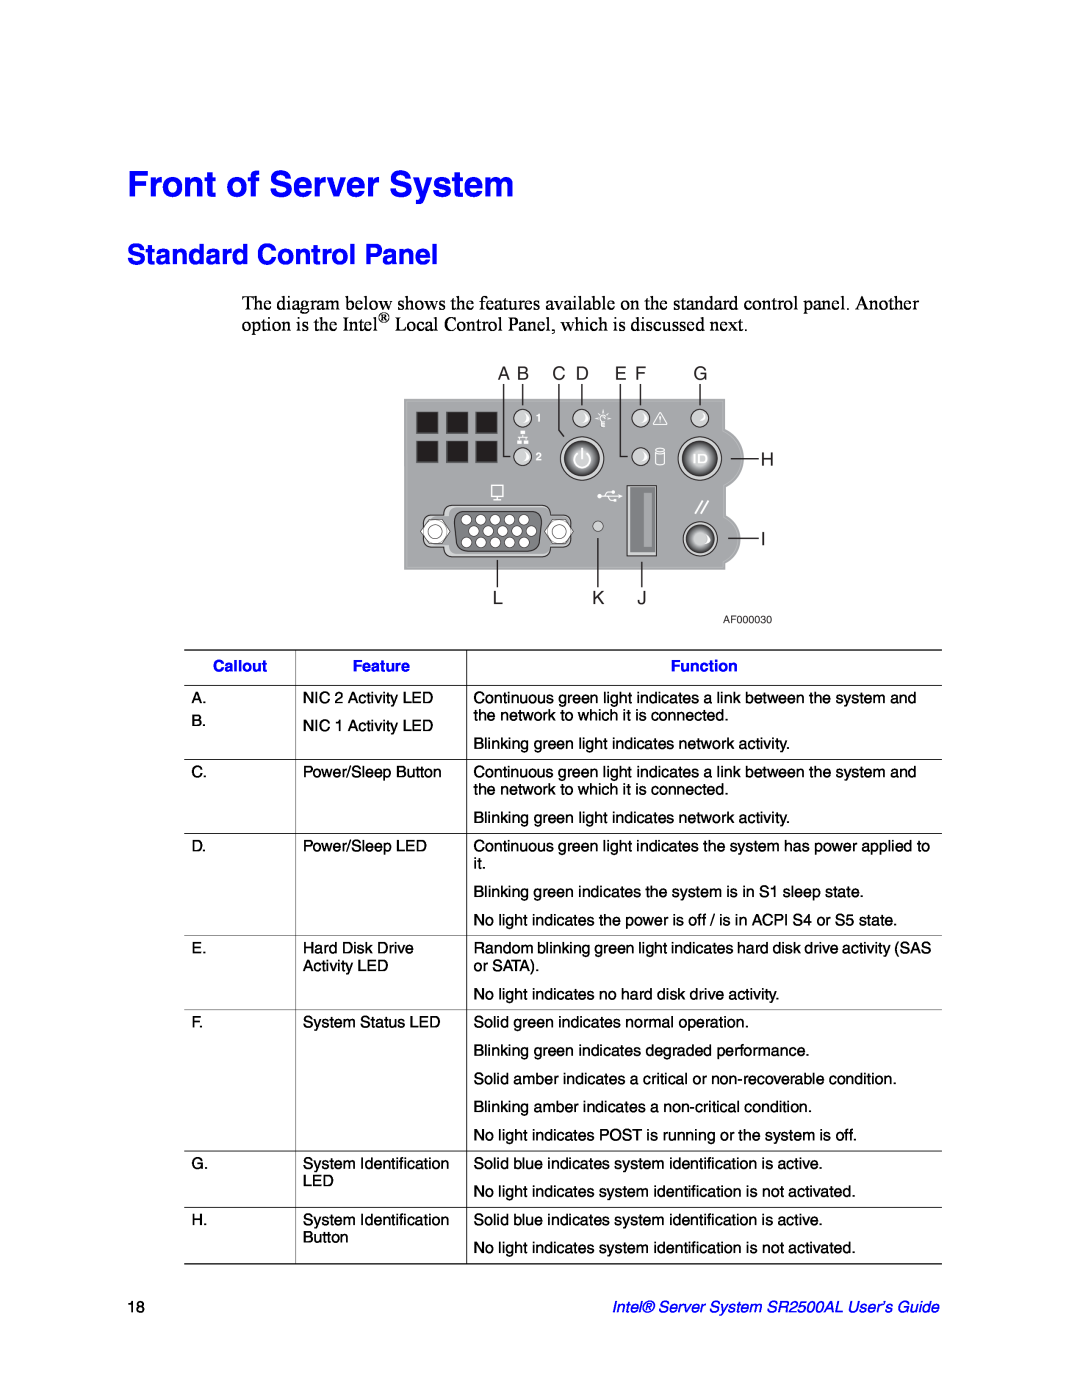 Intel SR2500AL manual Front of Server System, Standard Control Panel, A B C D E F G 